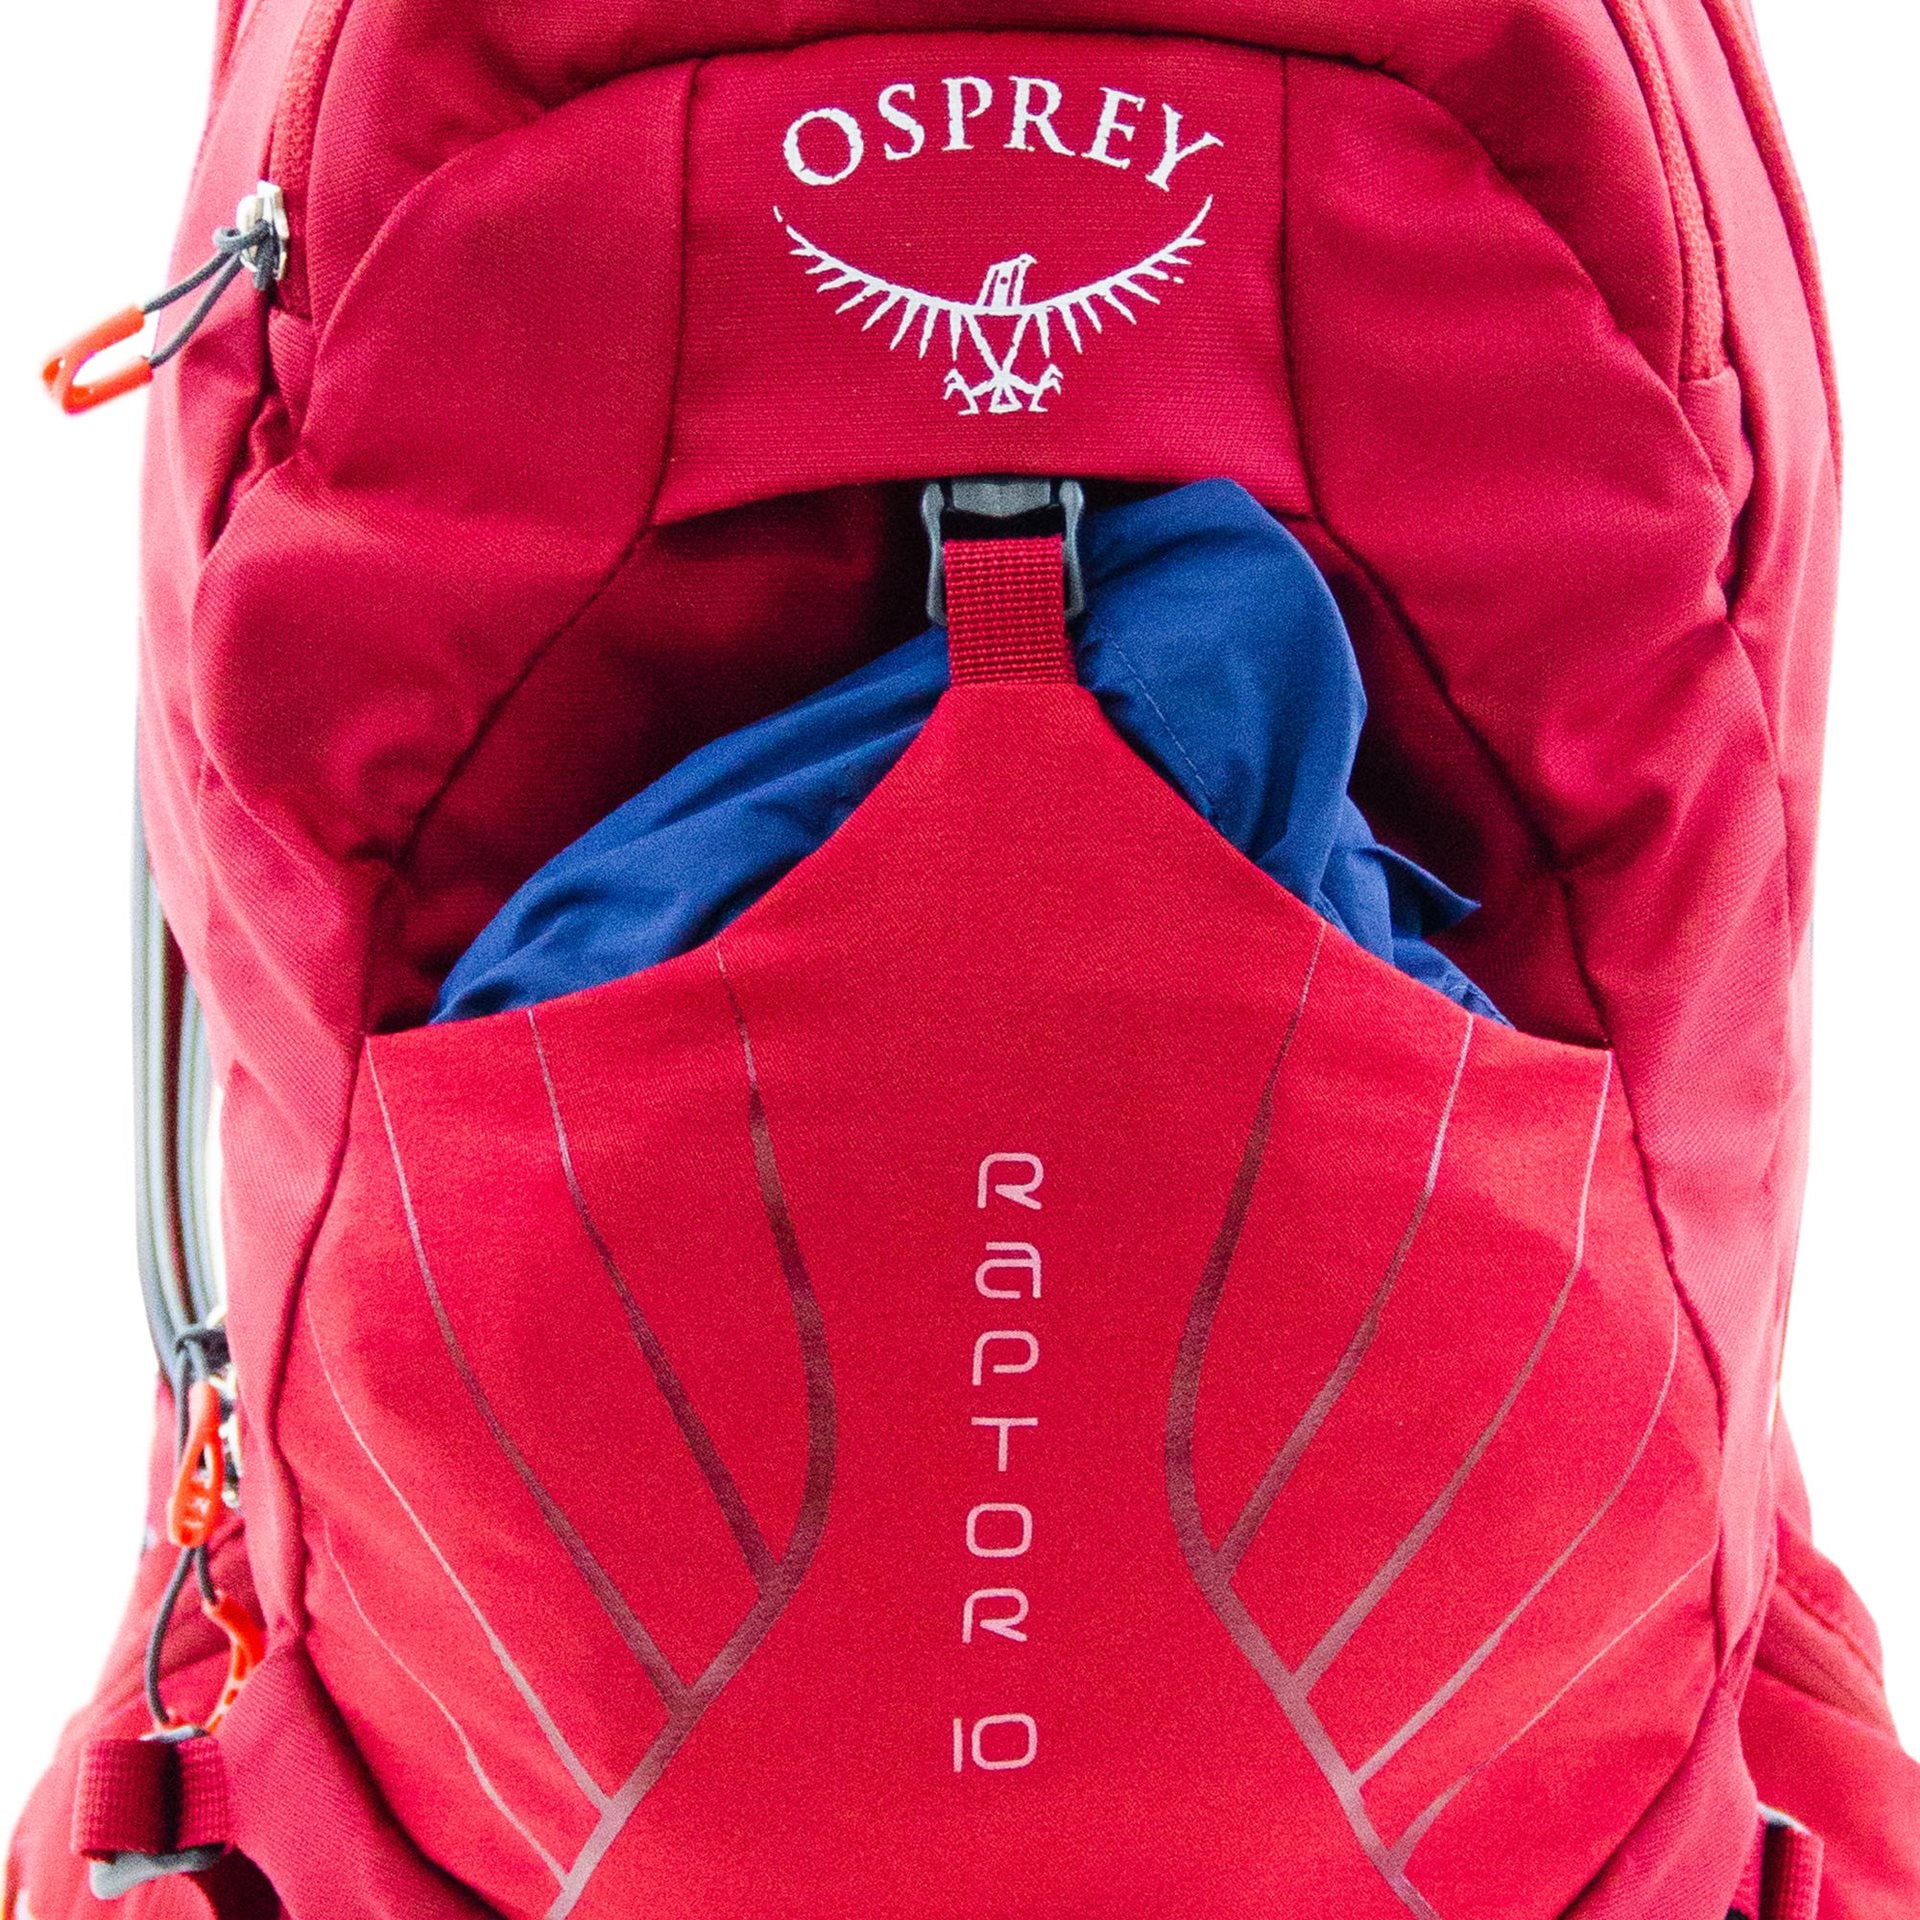 Osprey Raptor 10L - Wildfire red Rugzak - Reisartikelen-nl